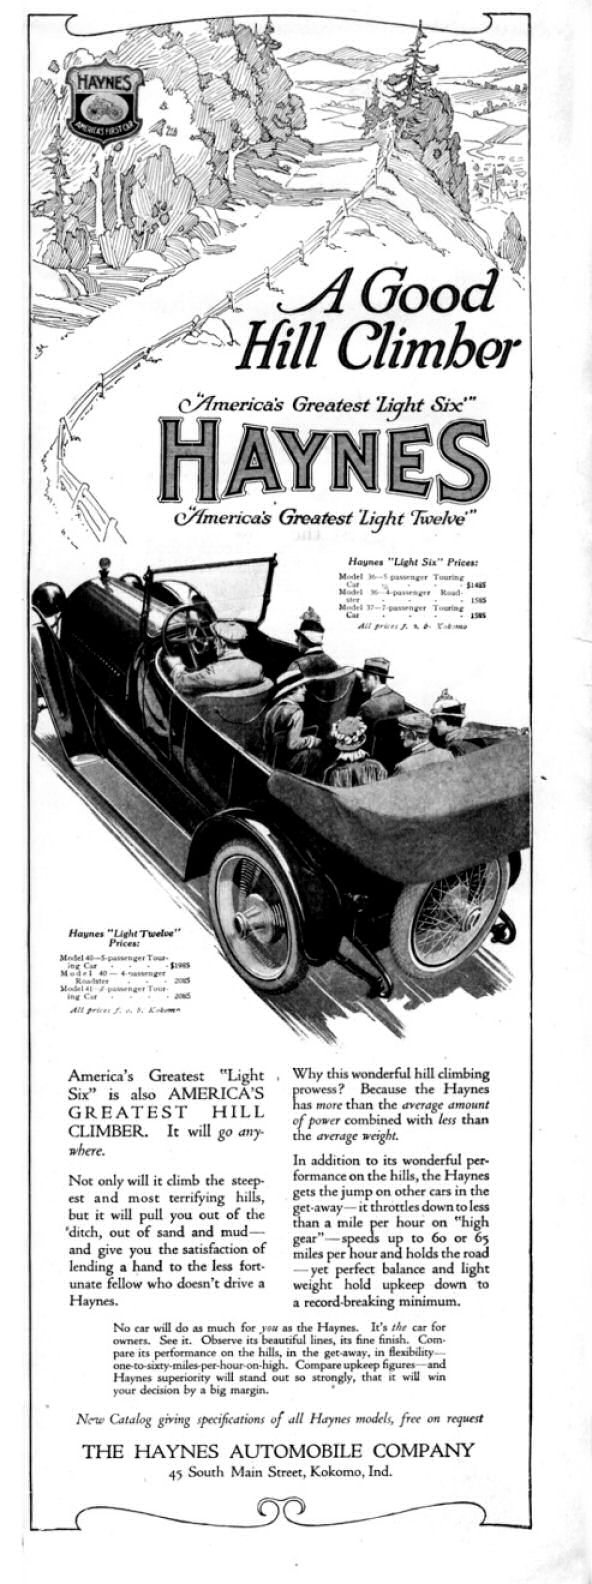 1916 Haynes-Apperson Auto Advertising